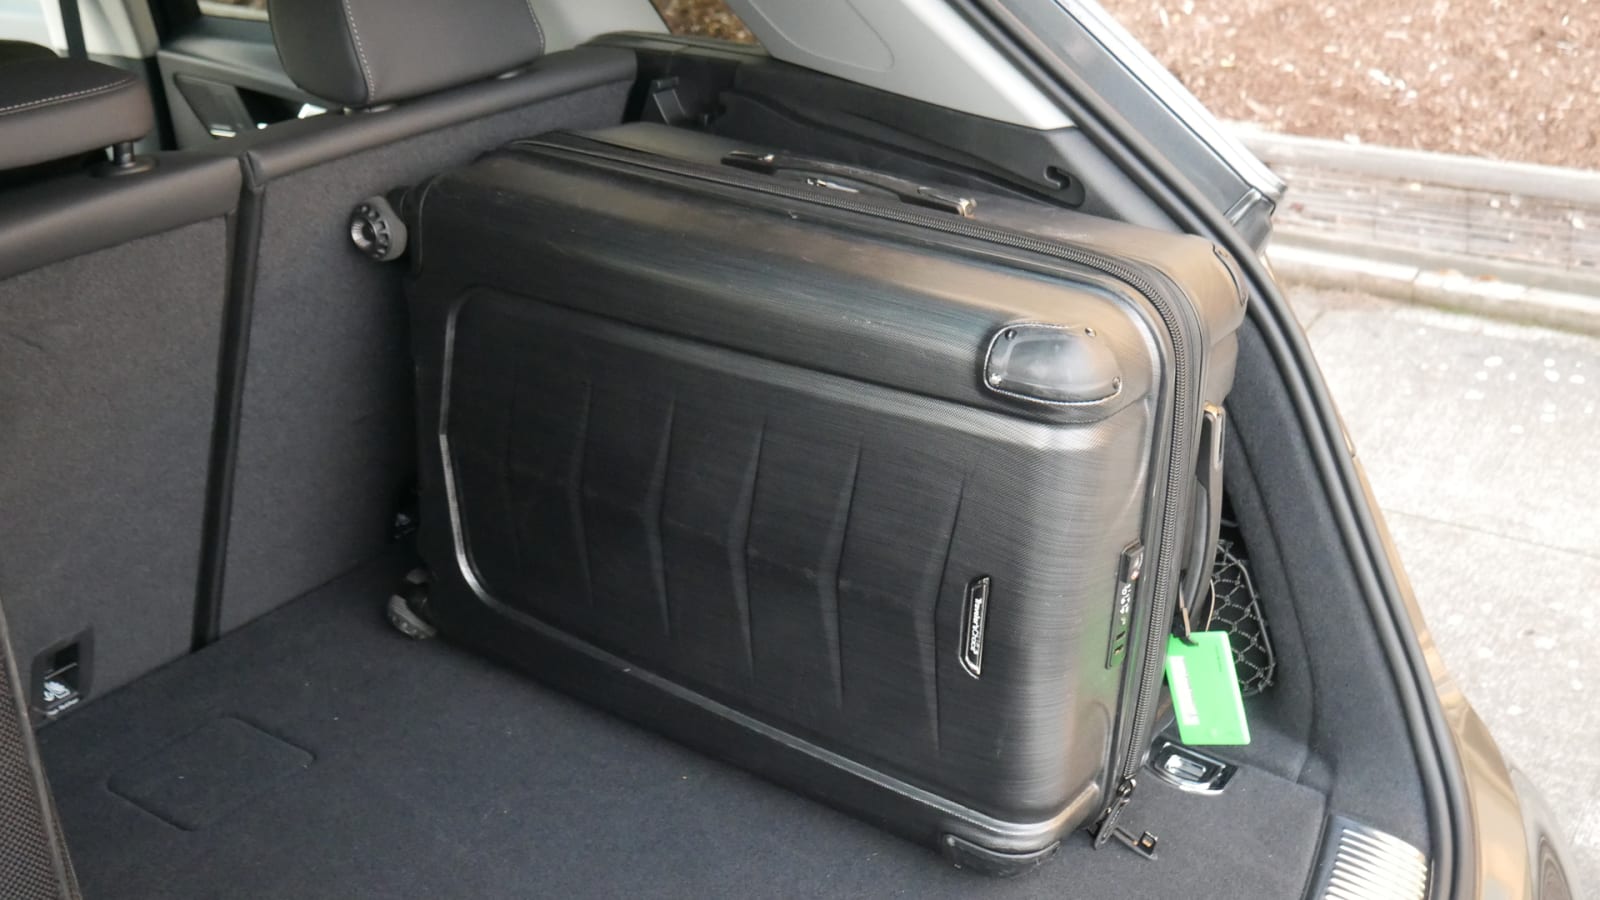 2021 Audi Q5 luggage test cargo depth